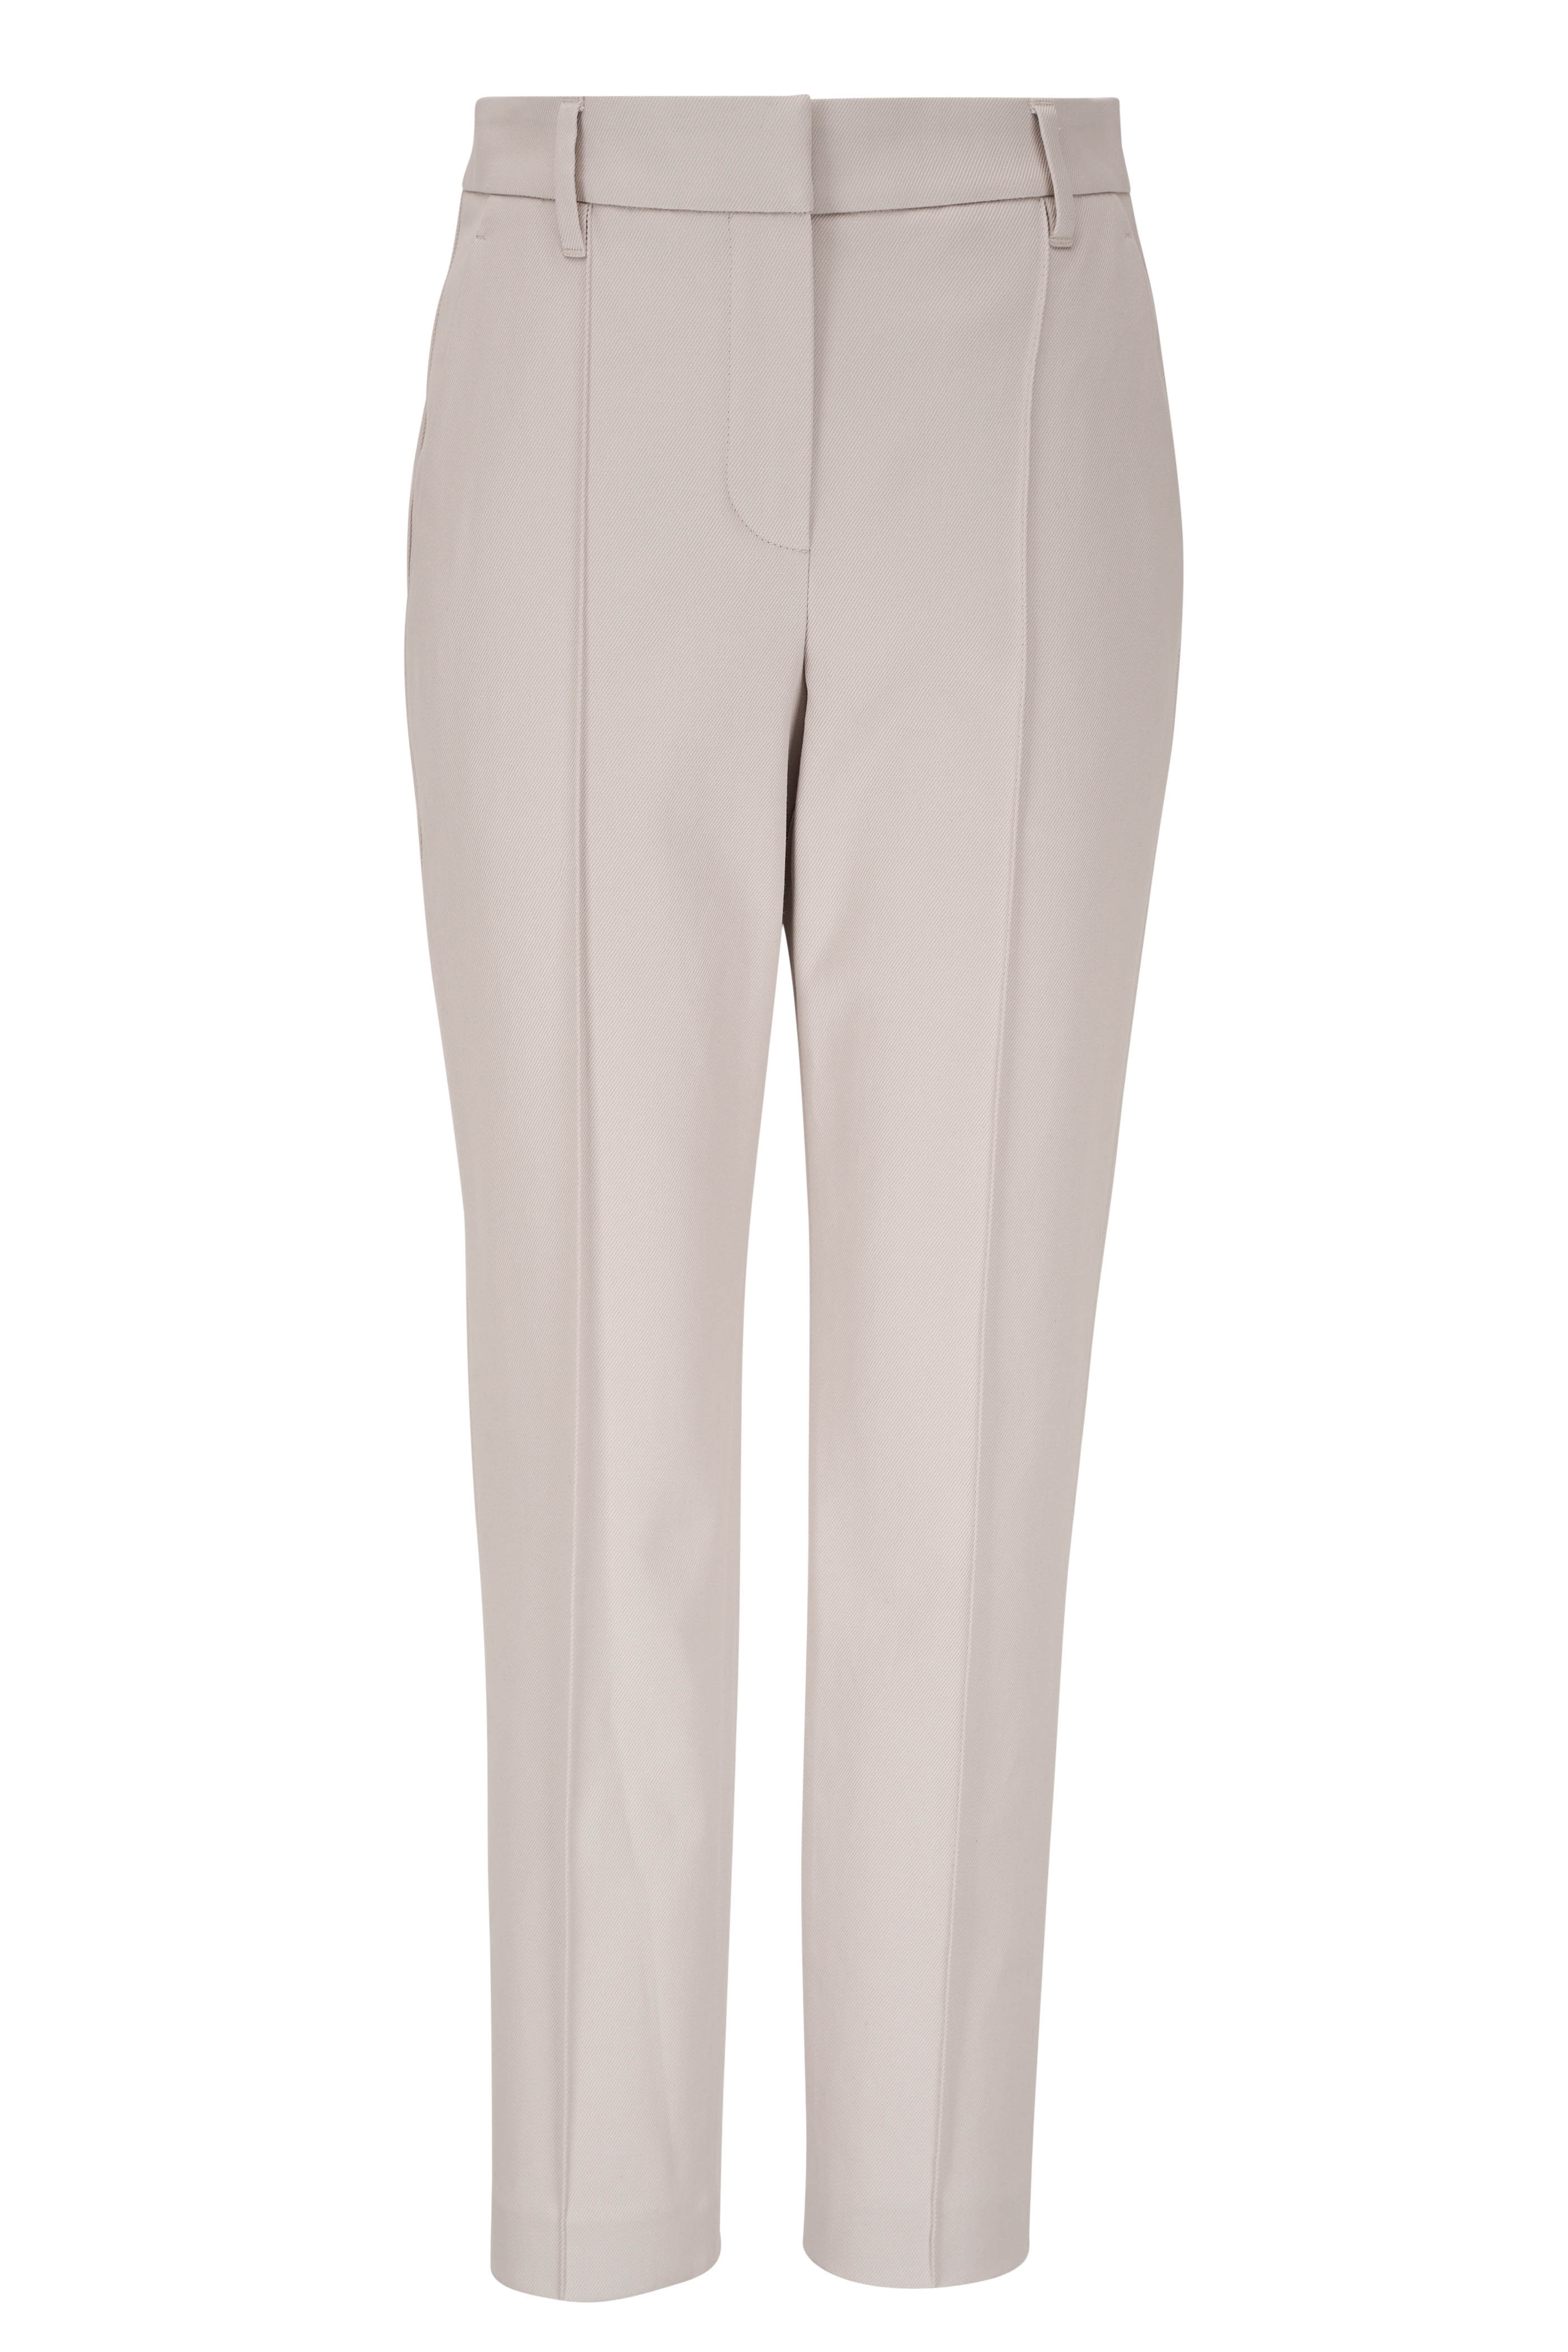 Brunello Cucinelli Women’s Beige Cotton Slim Pants US Size 10 $695 *defect*